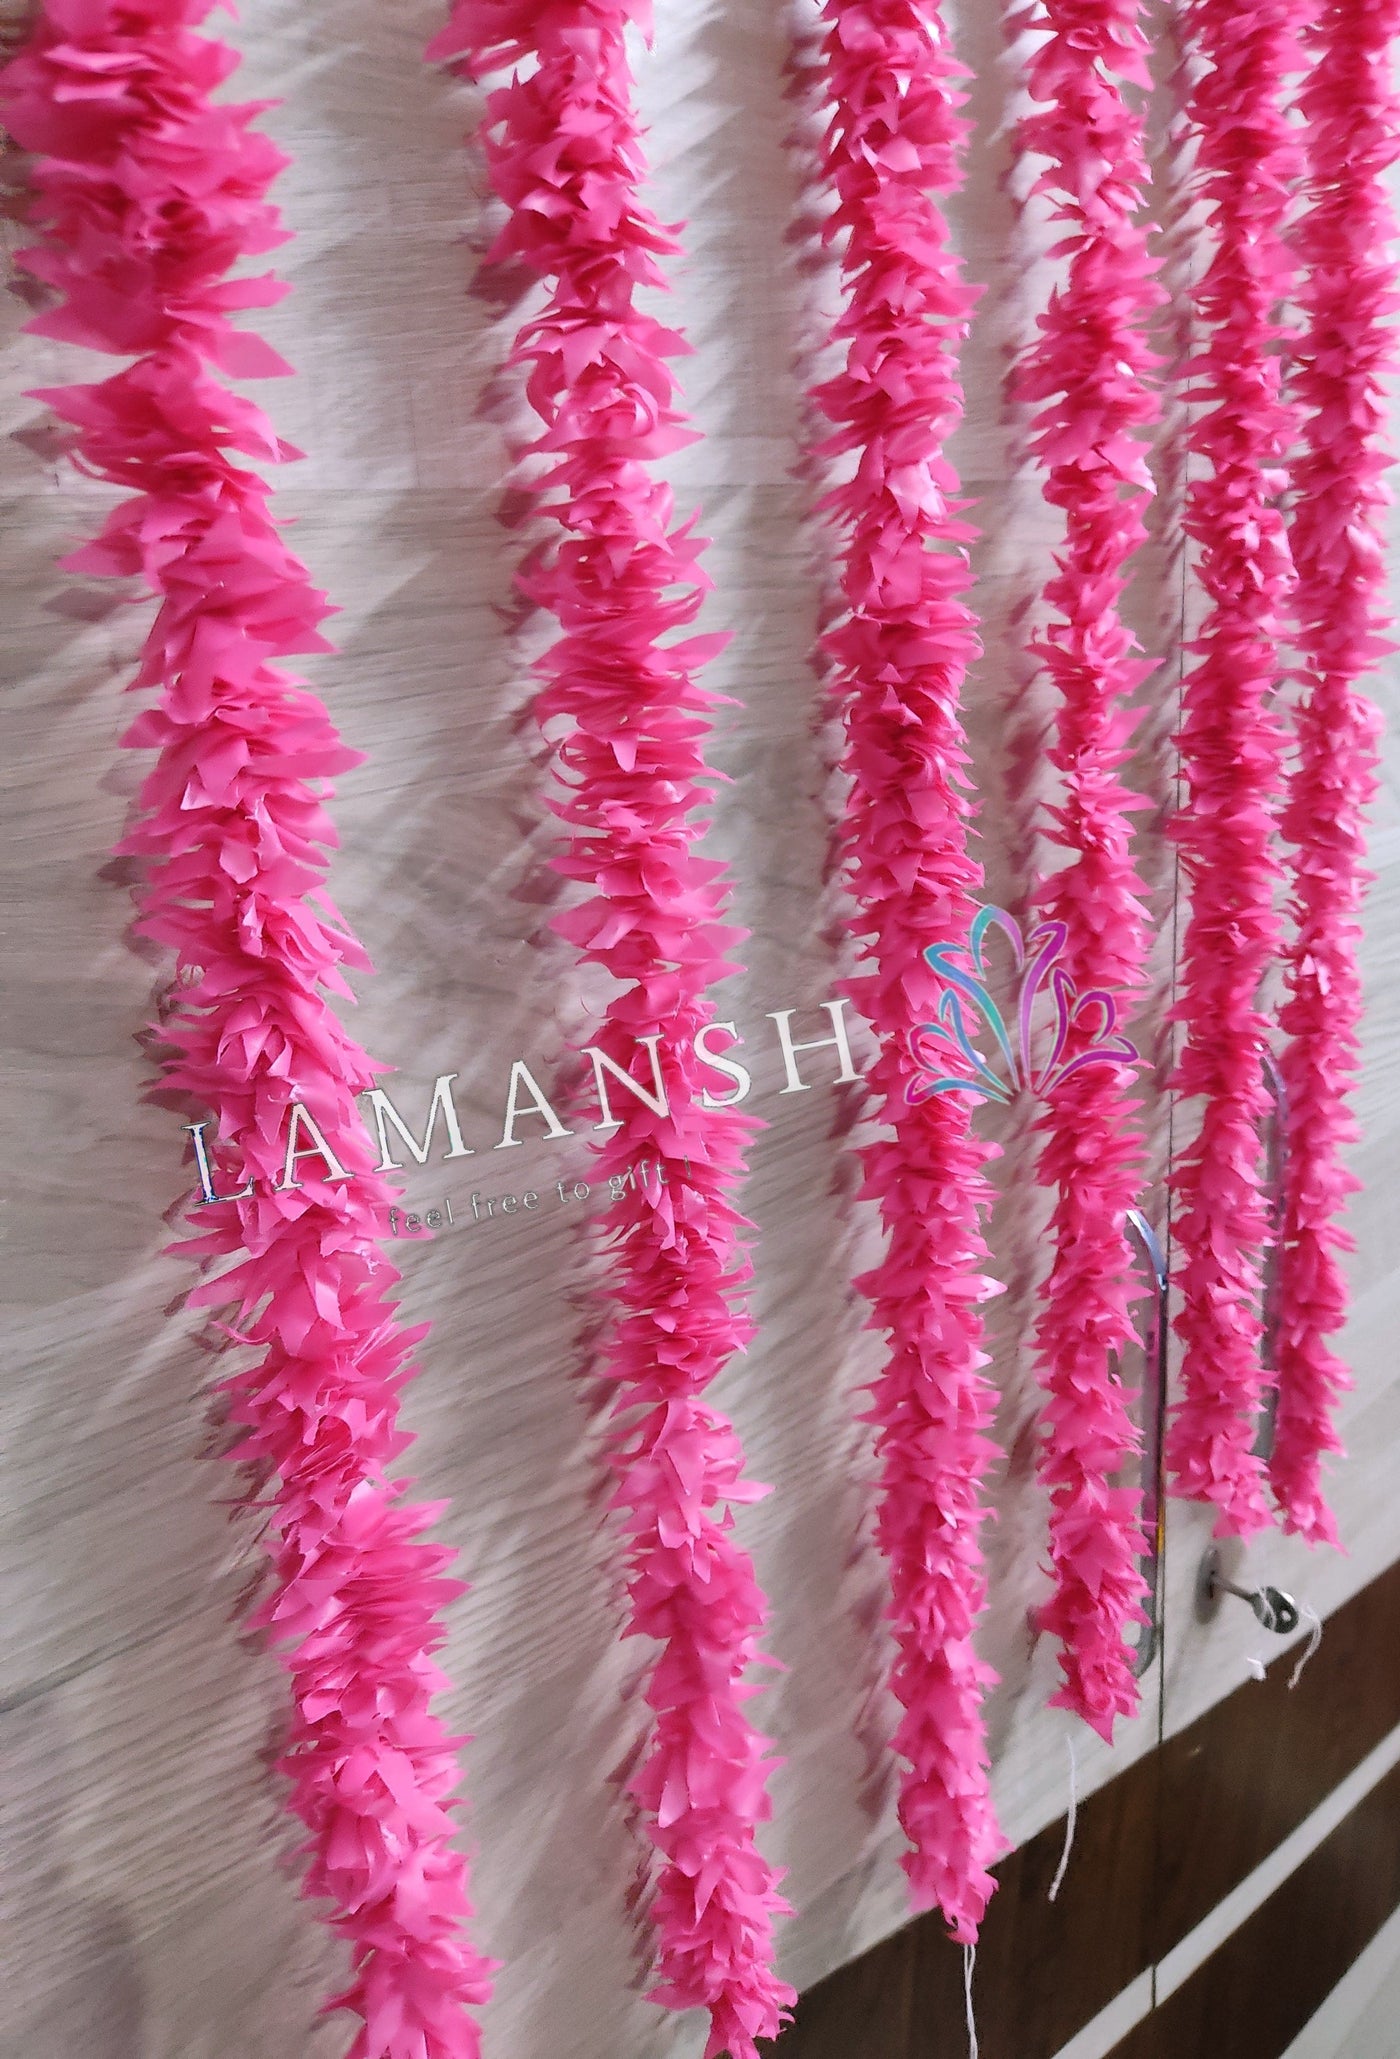 LAMANSH jasmine hangings LAMANSH® (3.5 feet) Pack of 12 Artificial Pink Jasmine Flower Hangings for Diwali ✨ Ganpati Decoration / Decorative Hangings for festival / Wall Hangings for Home & Pooja Mandir